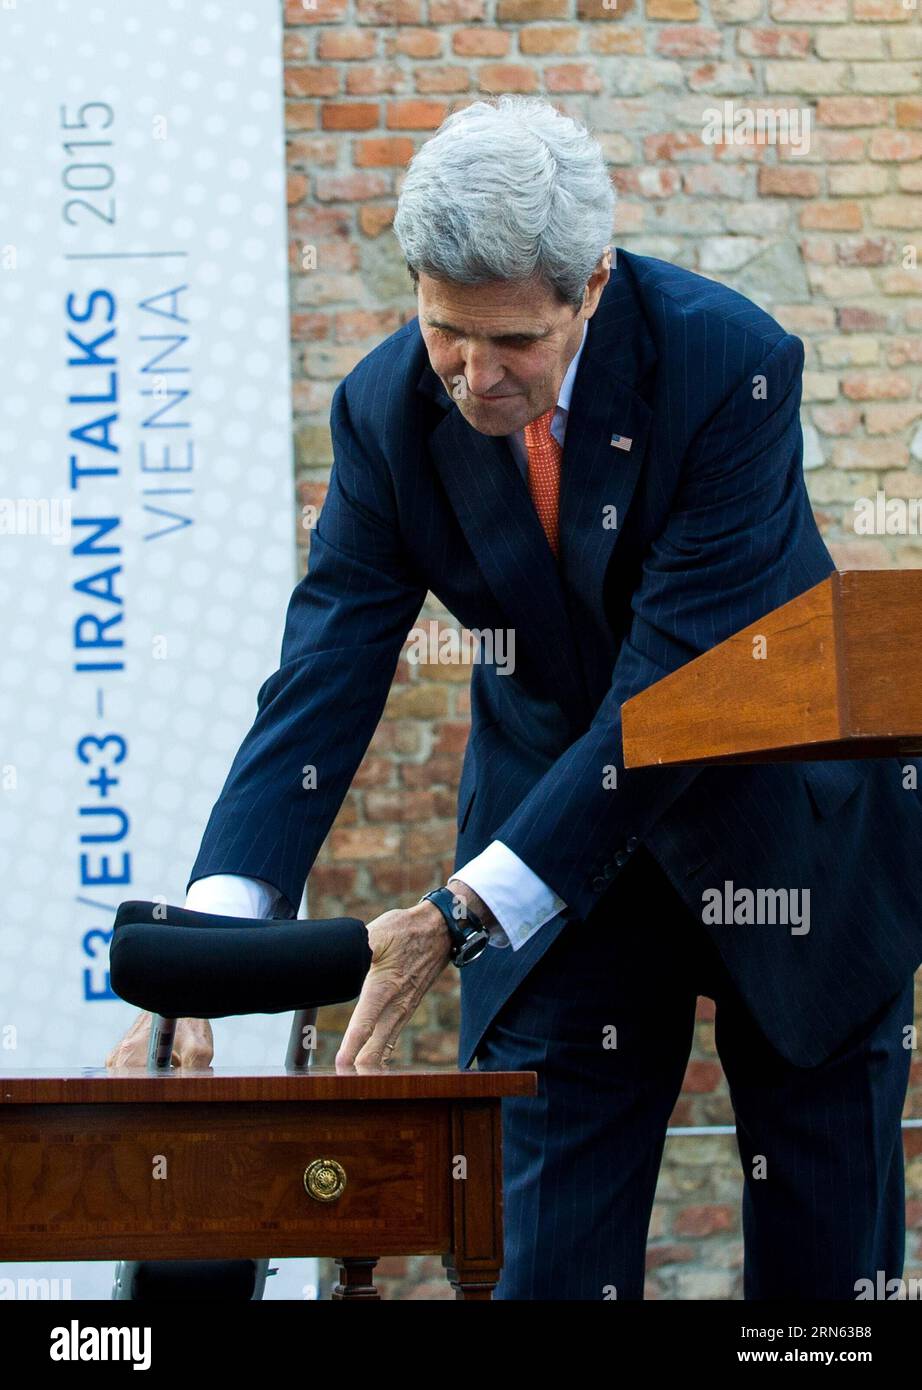 POLITIK Atomgespräche in Wien: PK John Kerry (150709) -- WIEN, 9. Juli 2015 -- US-Außenminister John Kerry kommt zu einer Pressekonferenz vor dem Palais Coburg, wo die Iran-Atomgespräche stattfinden, in Wien, Österreich, 9. Juli 2015. John Kerry sagte am Donnerstag, dass einige der schwierigen Fragen in den laufenden Atomgesprächen hier noch ungelöst seien und dass sehr bald harte Entscheidungen getroffen werden müssten. ) ÖSTERREICH-WIEN-IRAN NUKLEARGESPRÄCHE-JOHN KERRY QianxYi PUBLICATIONxNOTxINxCHN Politik Nukleargespräche in Wien Pressekonferenz John Kerry 150709 Wien 9. Juli 2015 US-Außenminister John Kerry Stockfoto